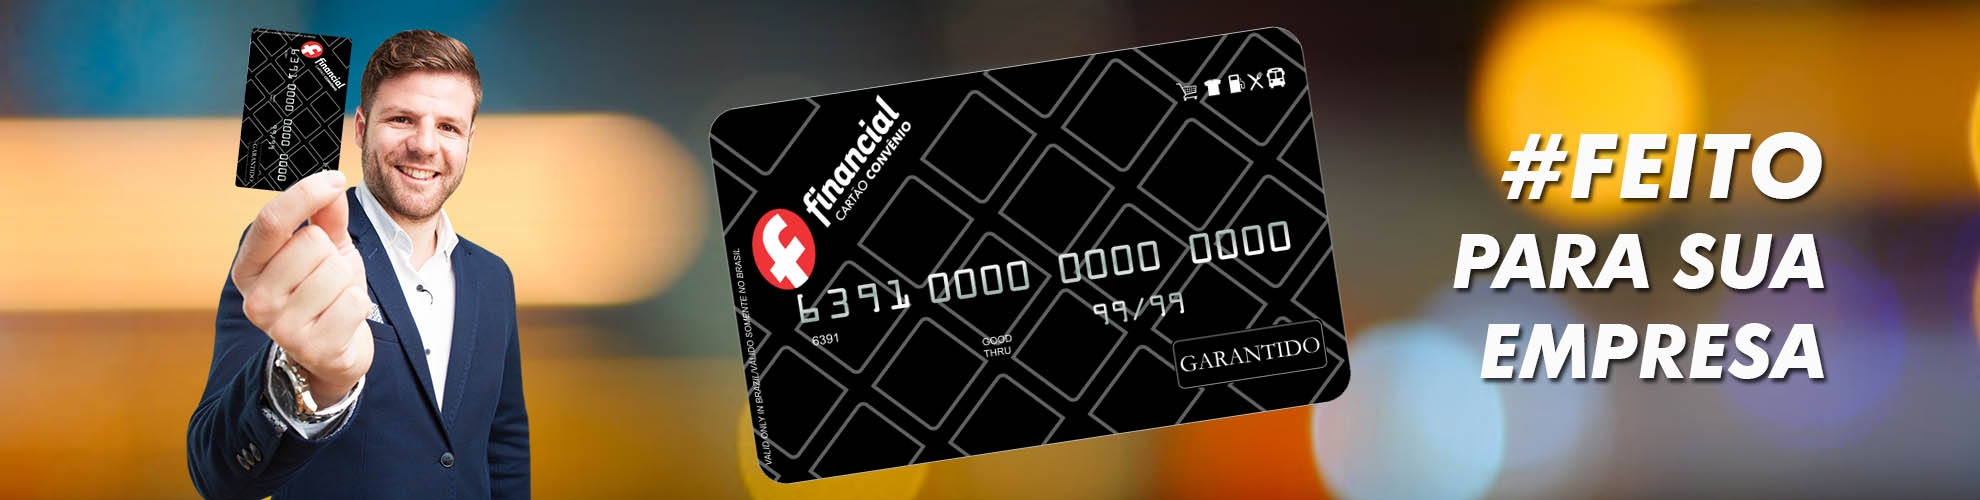 Cartão Financial Garantido Convênio